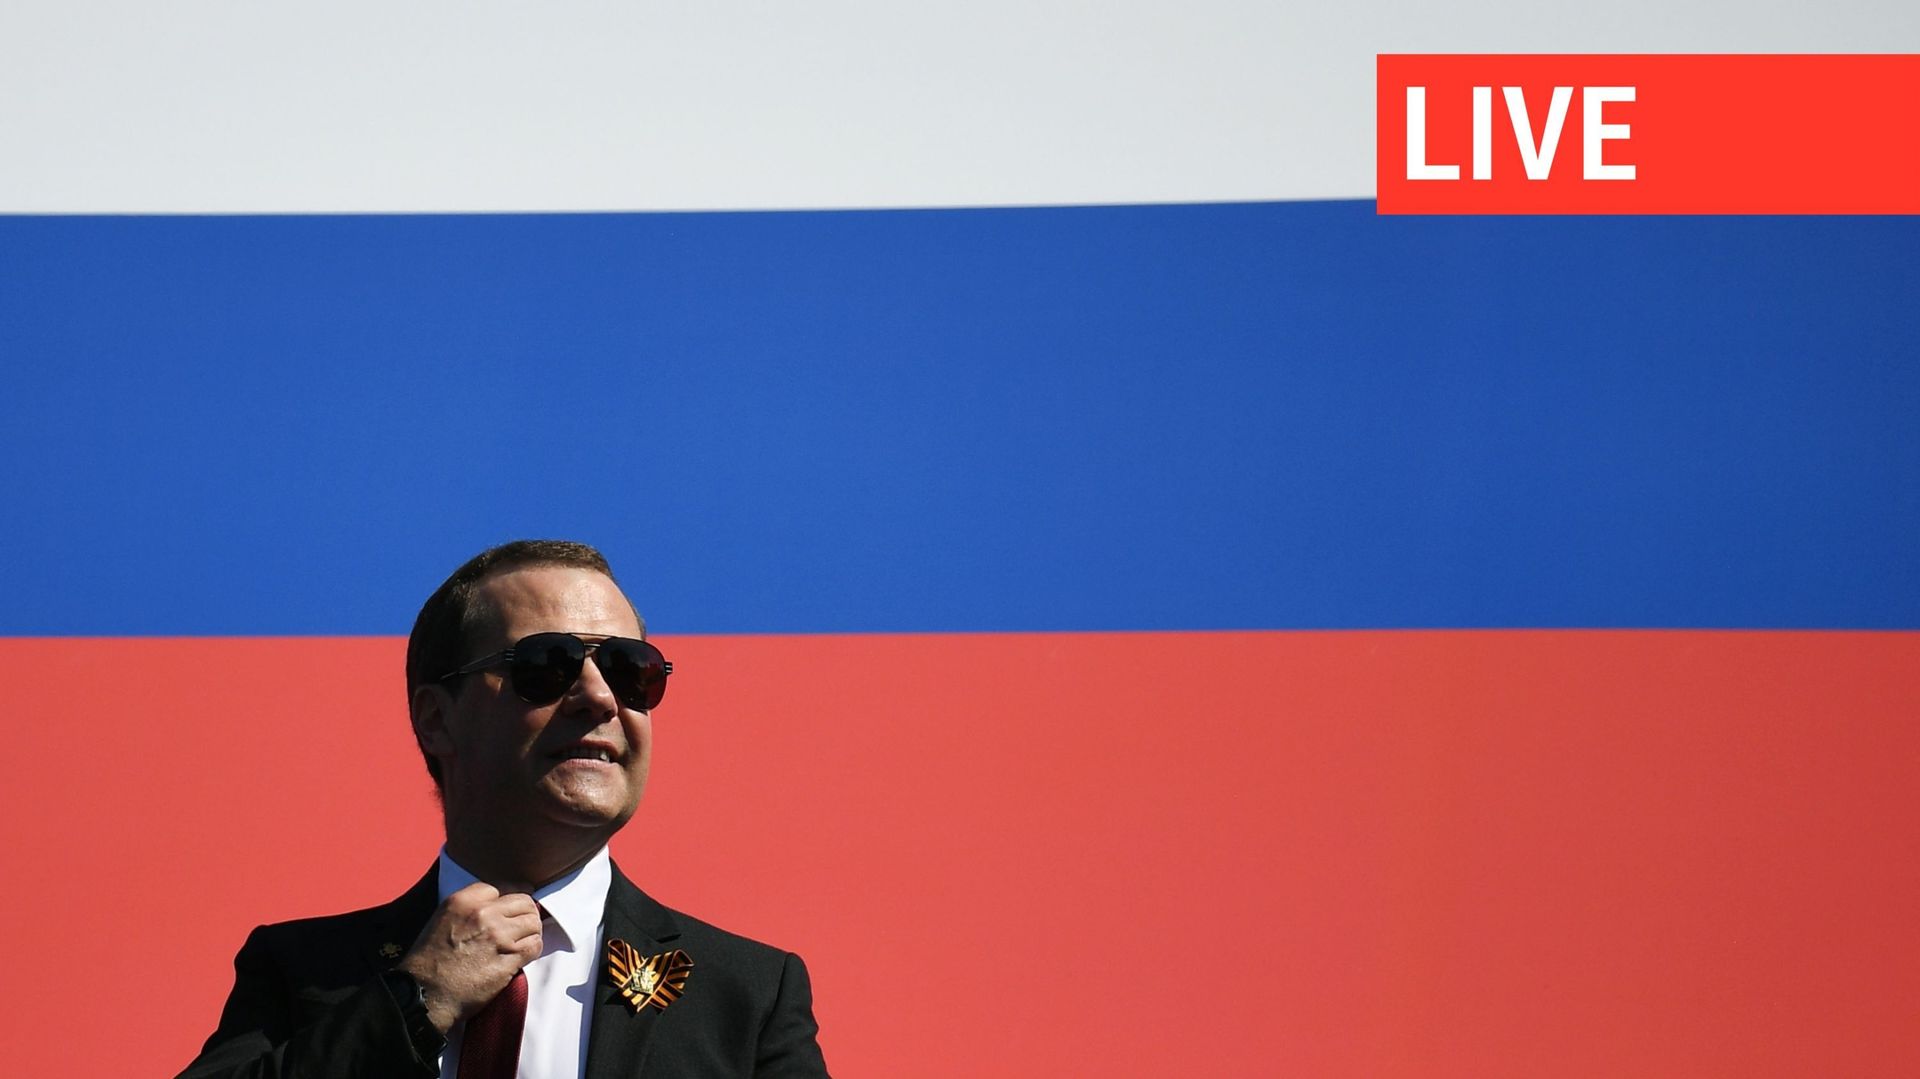 Le vice-président du Conseil de sécurité, Dmitri Medvedev, lors du défilé militaire du jour de la victoire sur la place Rouge en 2020, lors du 75e anniversaire de la fin de la Grande Guerre patriotique lorsque les nazis ont capitulé devant l’Union soviéti